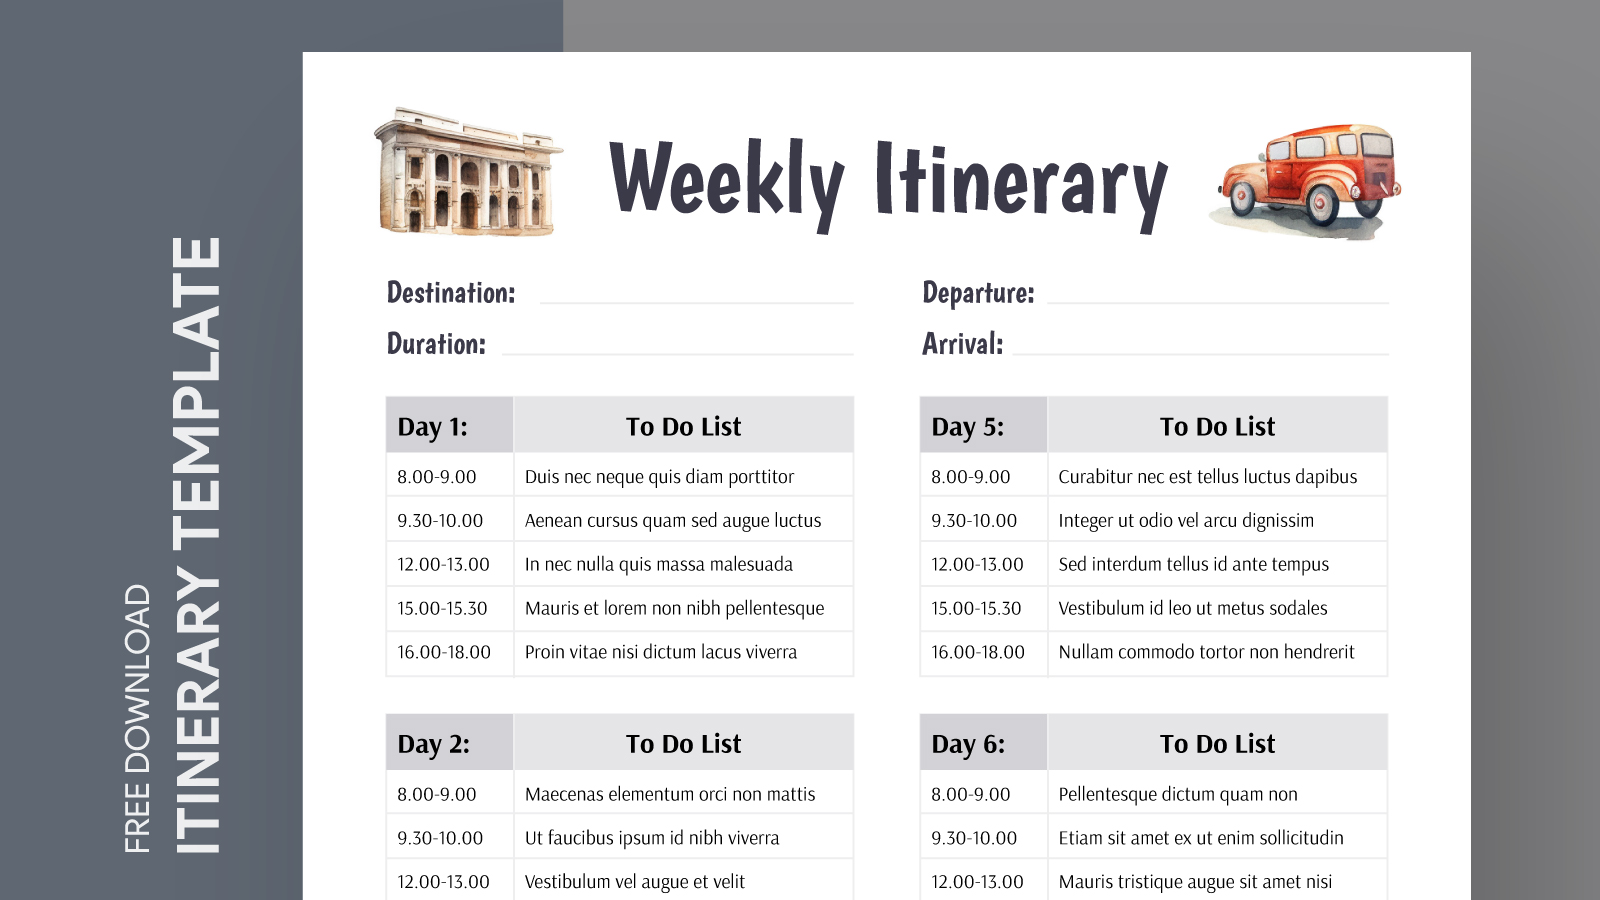 bi weekly budget calendar template